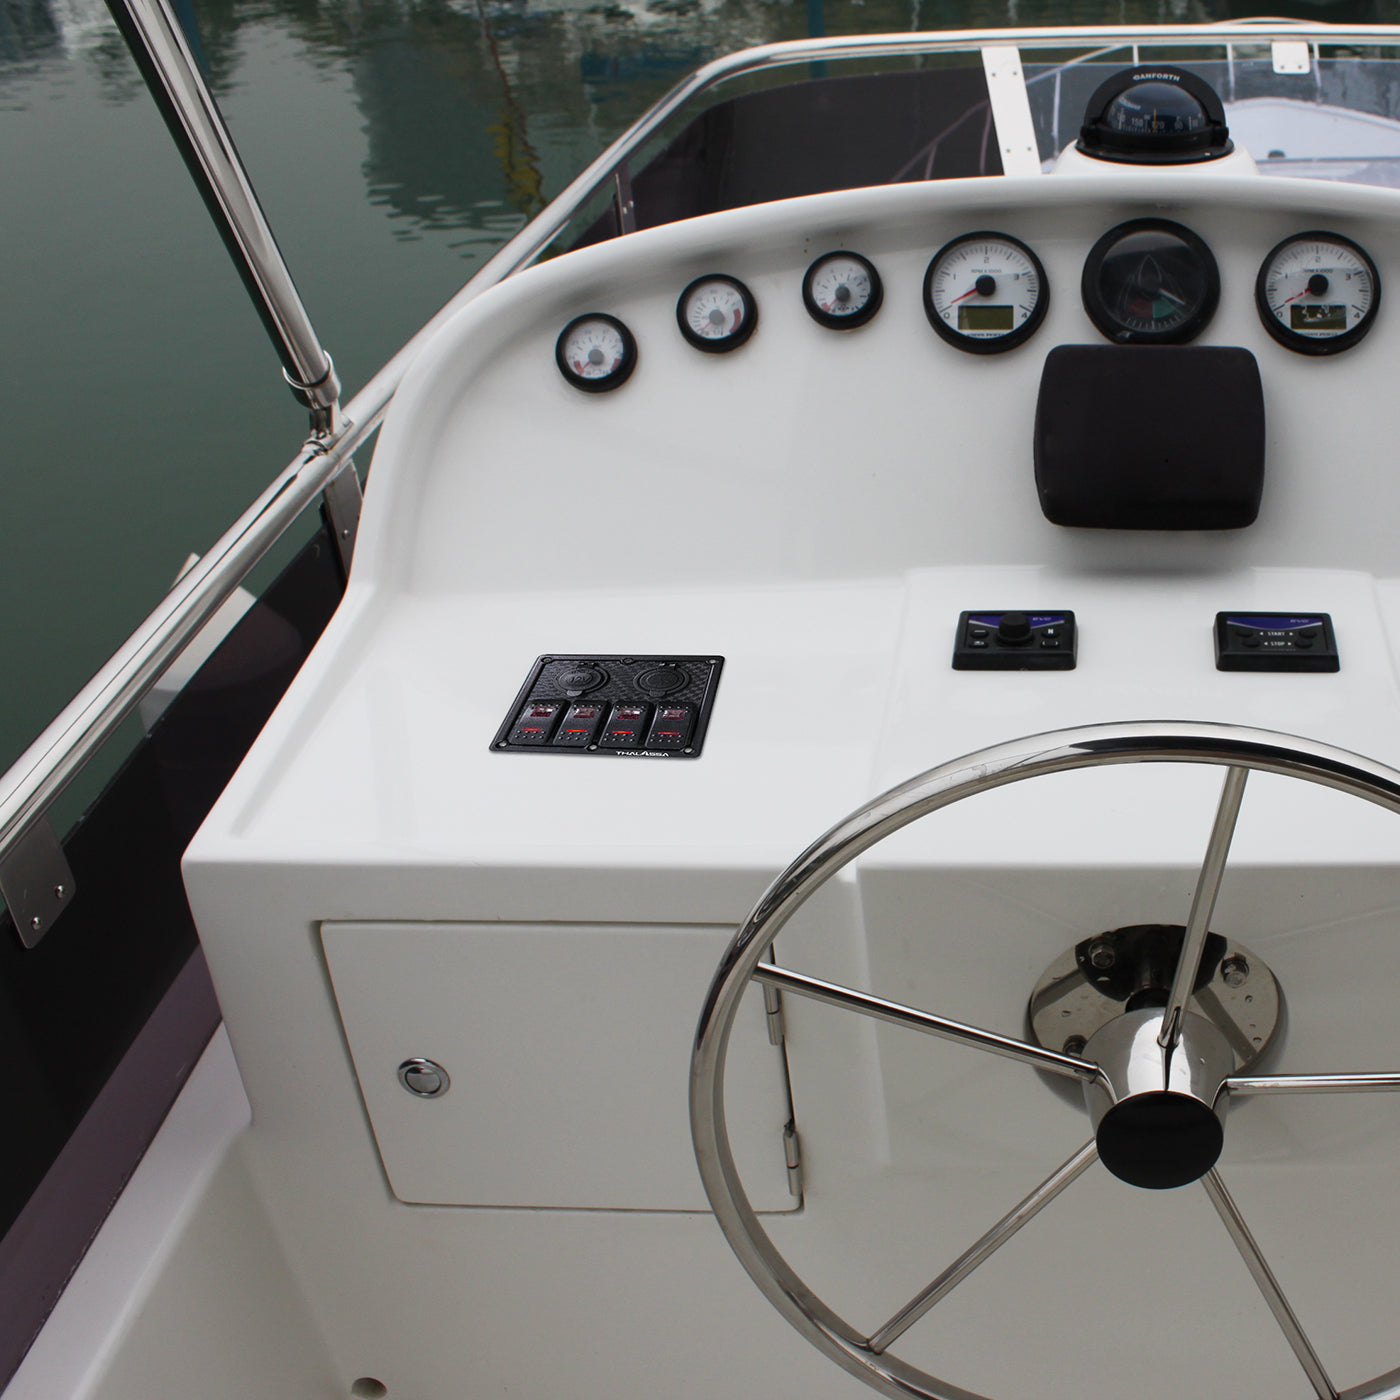 THALASSA Gang Waterproof Marine Boat Rocker Switch Panel, 3.1A Dual –  Thalassa Marine